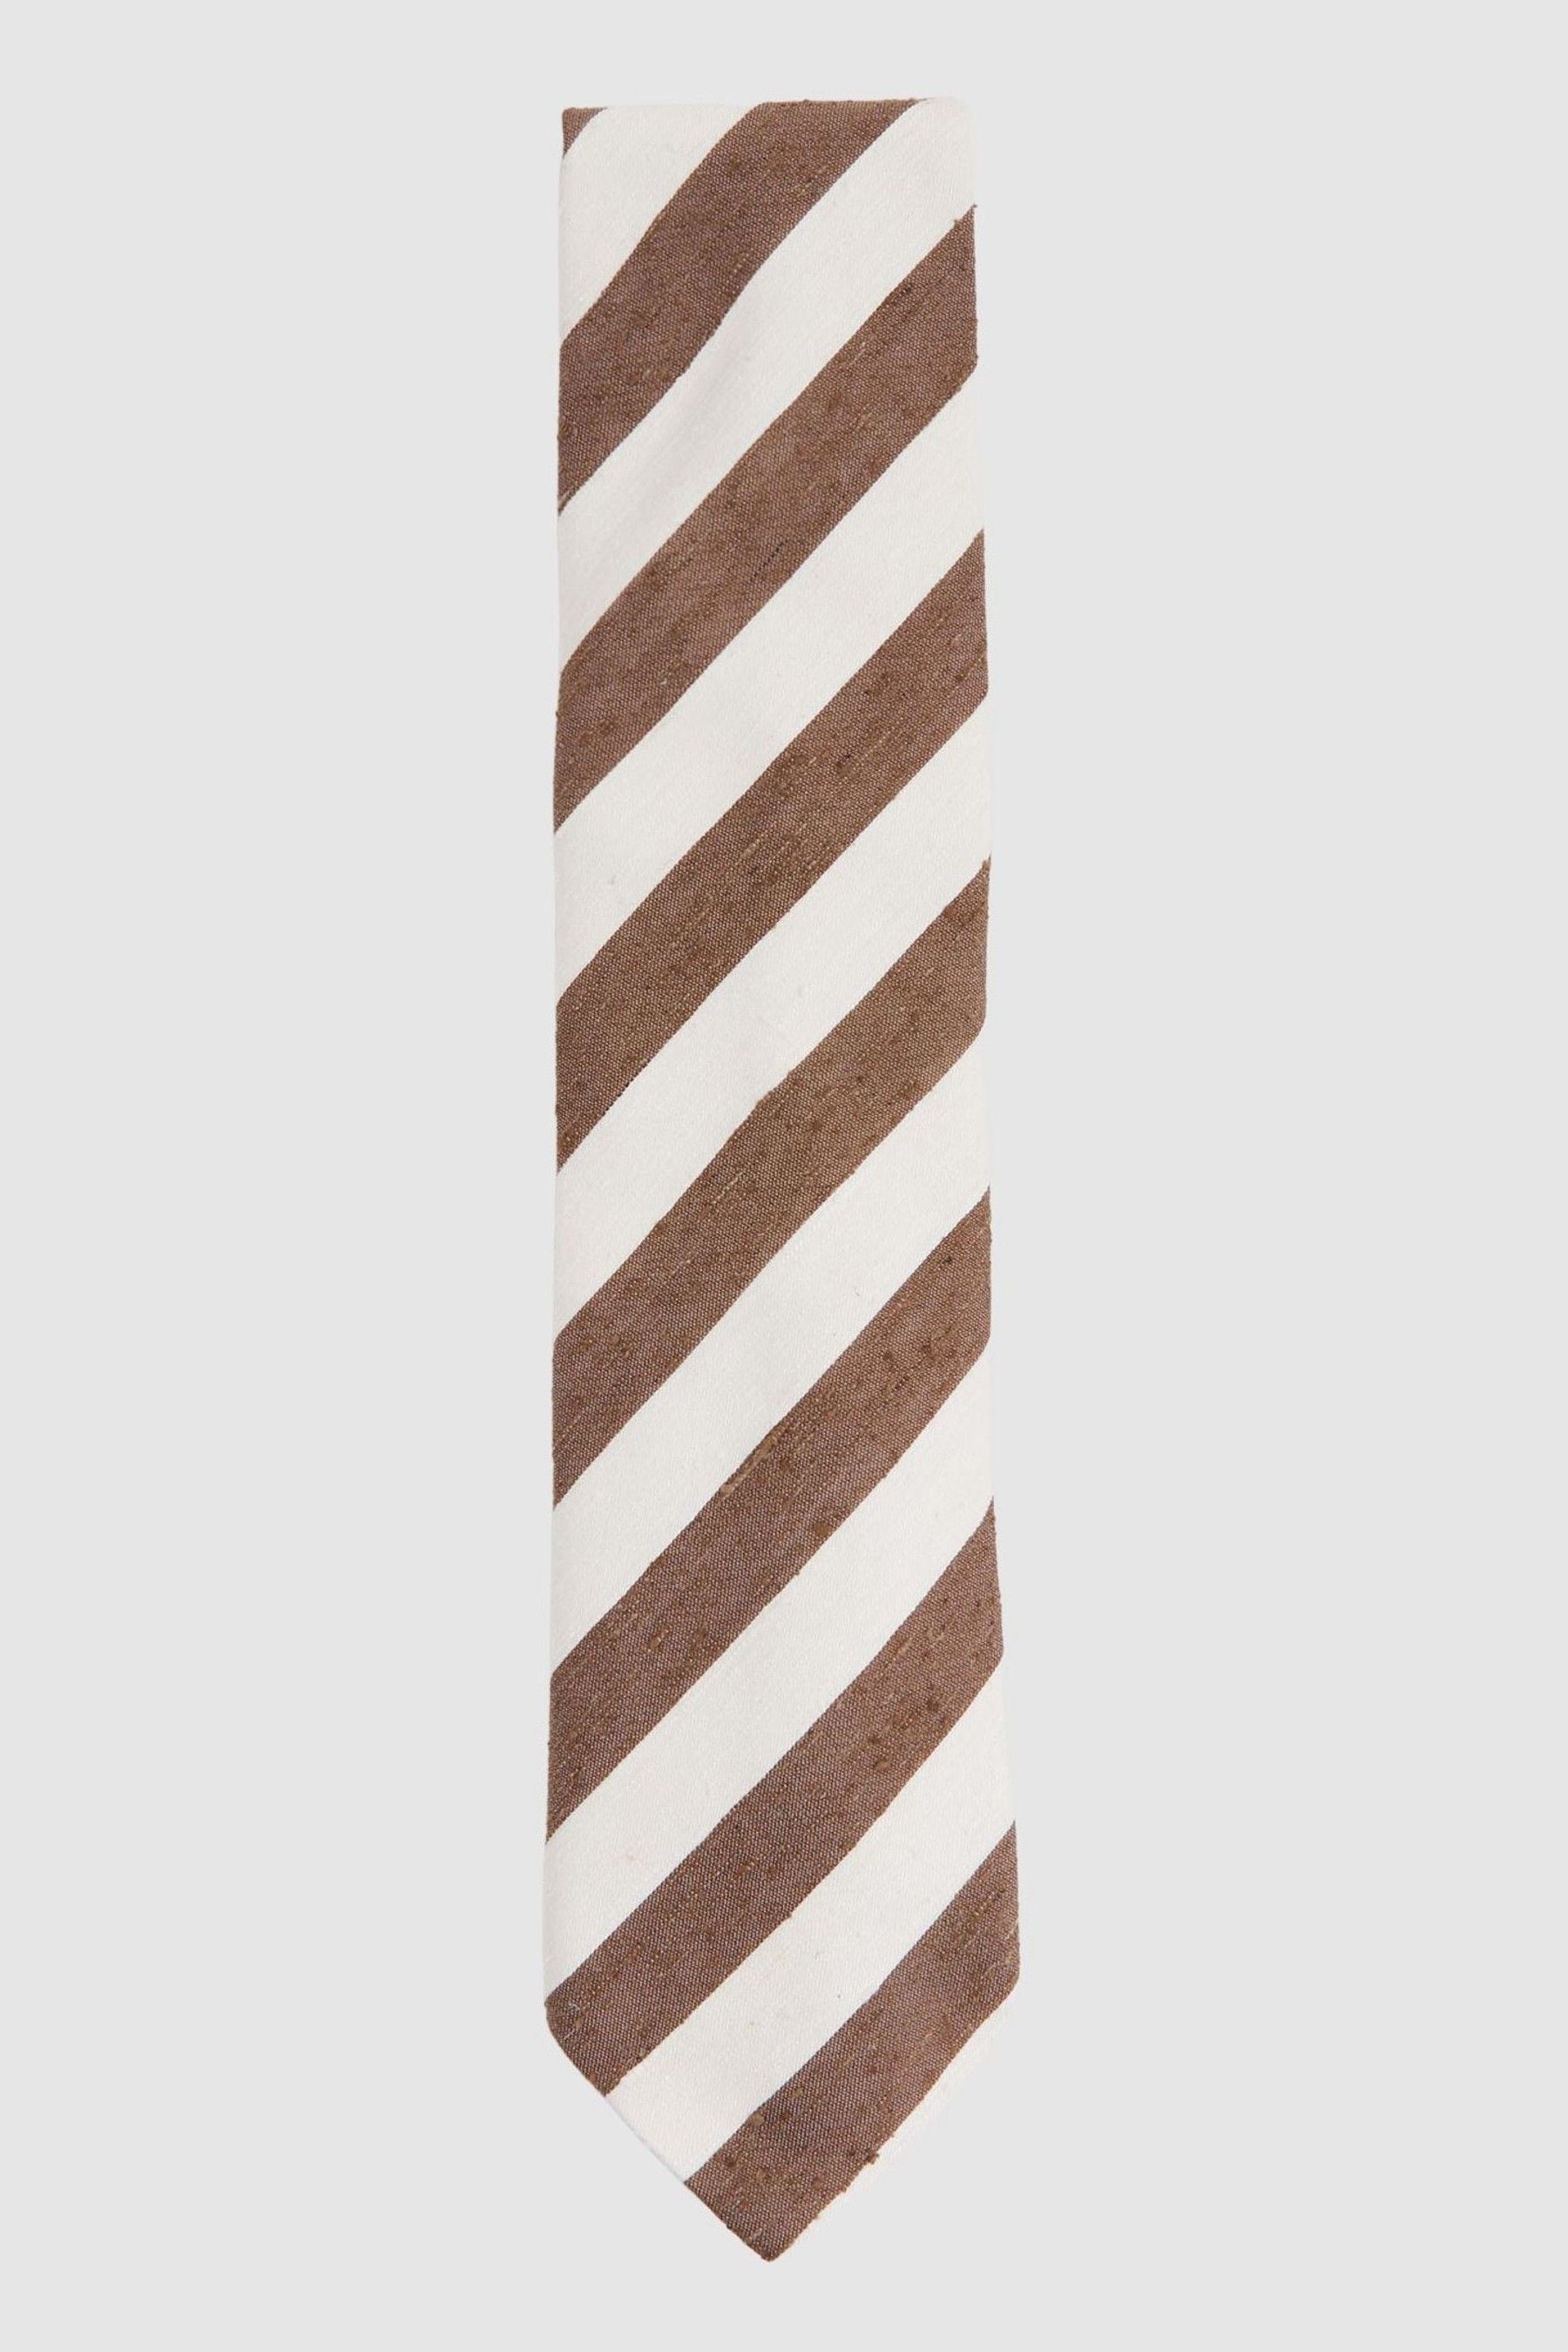 Reiss Sienna - Chocolate/ivory Textured Silk Blend Striped Tie, One